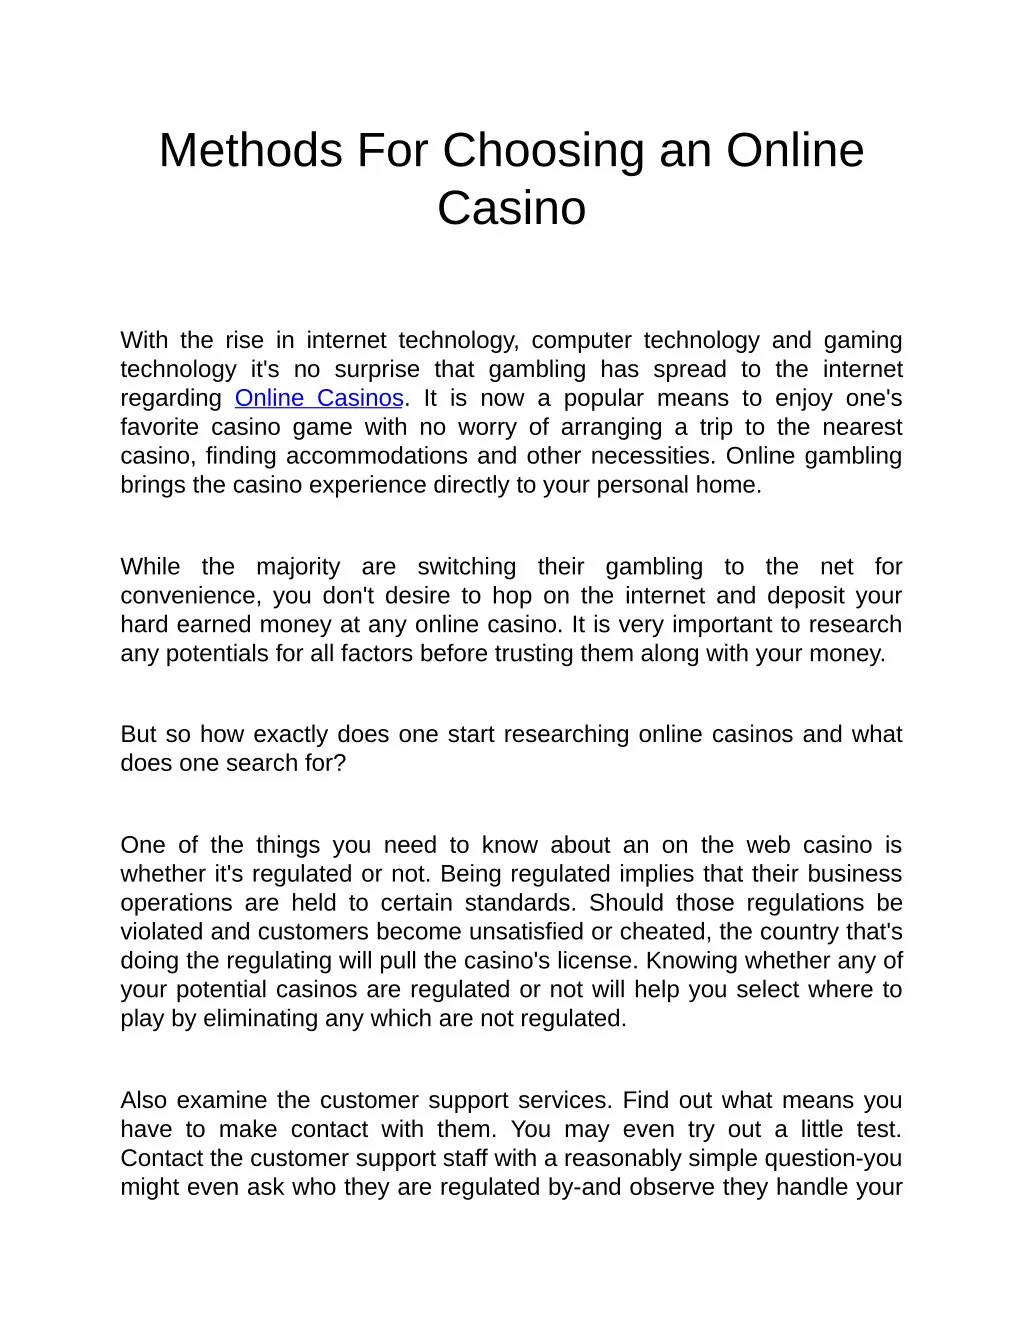 methods for choosing an online casino